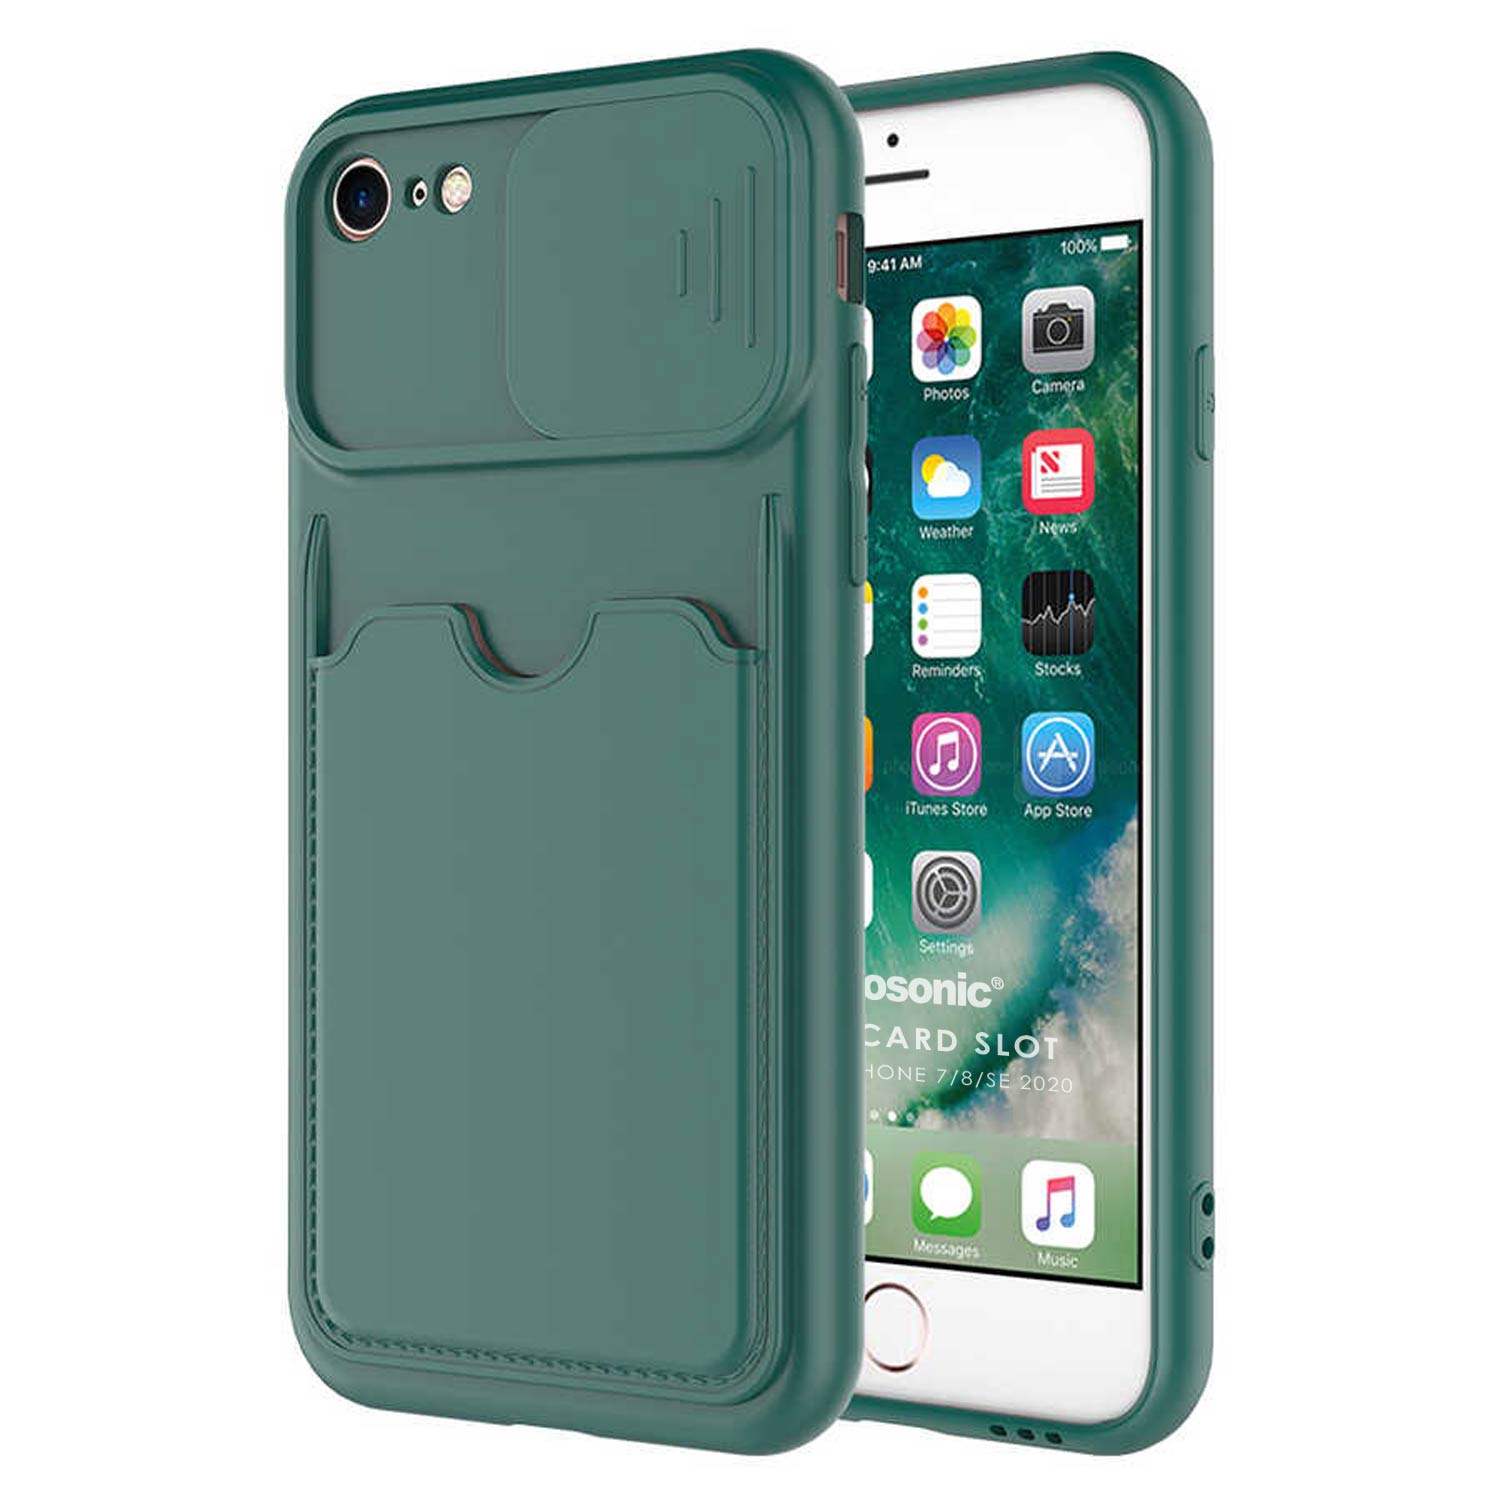 Microsonic Apple iPhone SE 2020 Kılıf Inside Card Slot Koyu Yeşil